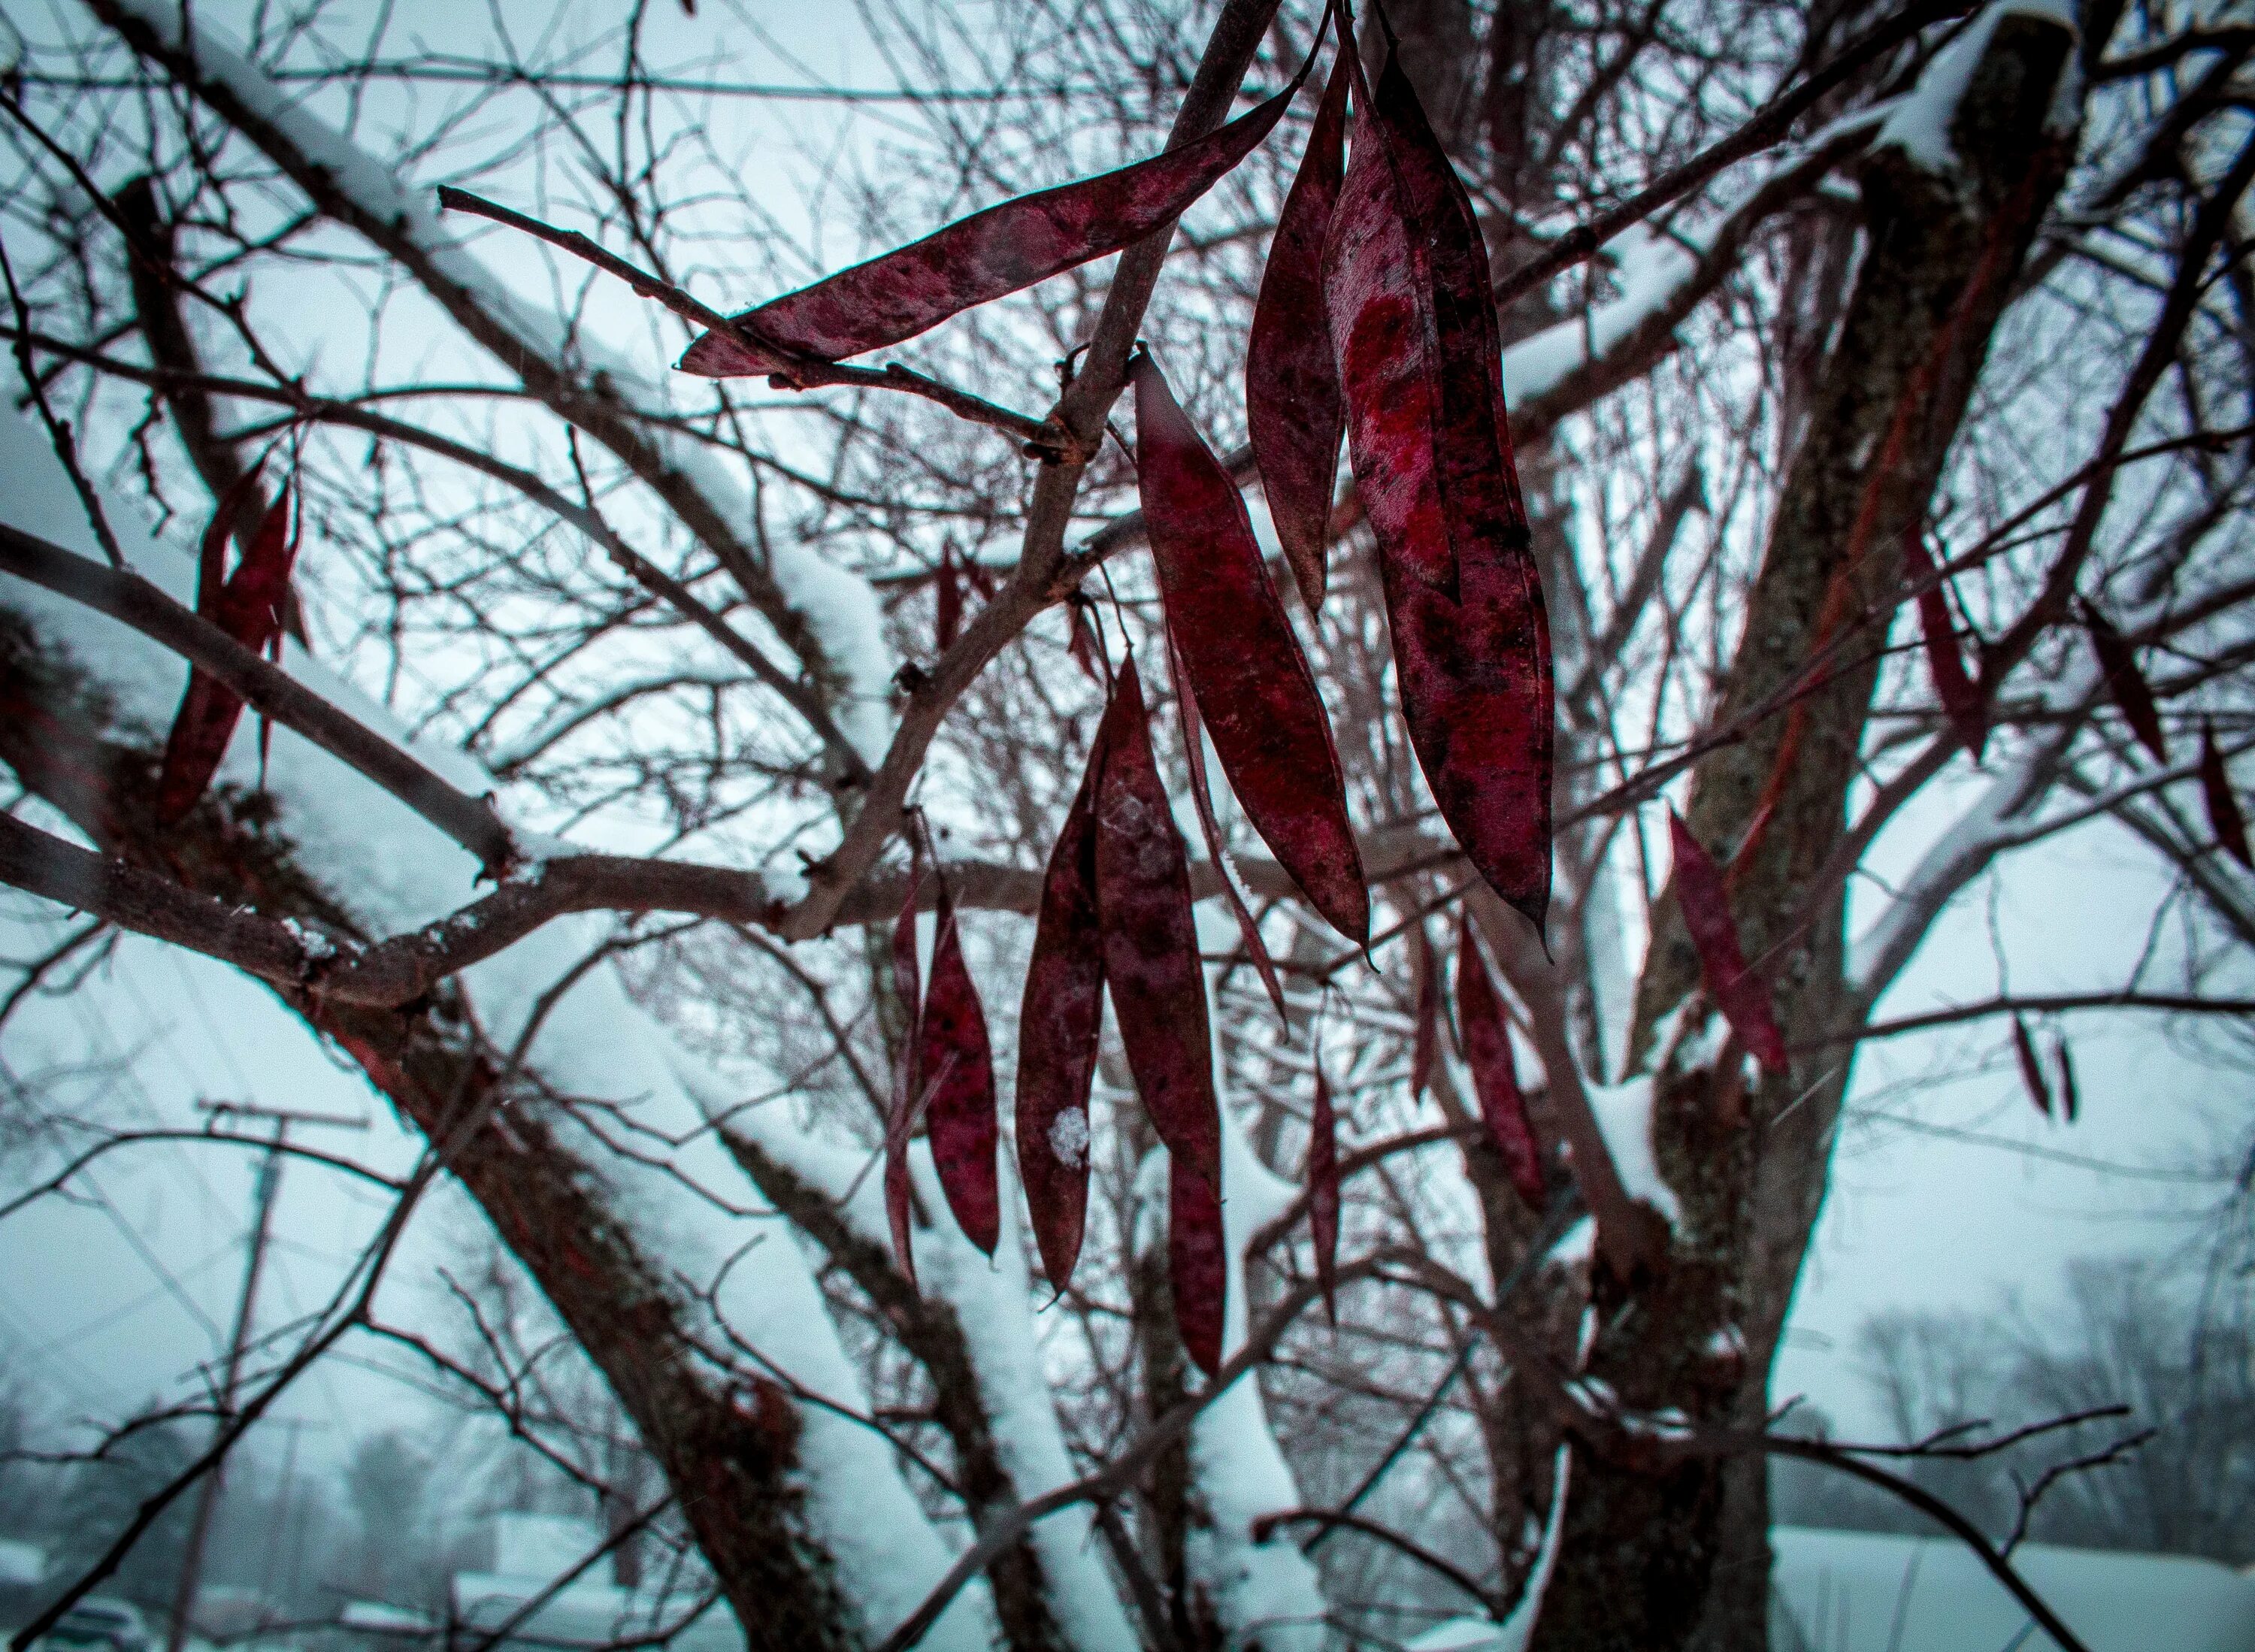 Почему краснеет дерево. Красное дерево в снегу. Художественное фото красное дерево. Дерево без листьев зима. Почему краснеет голое дерево.